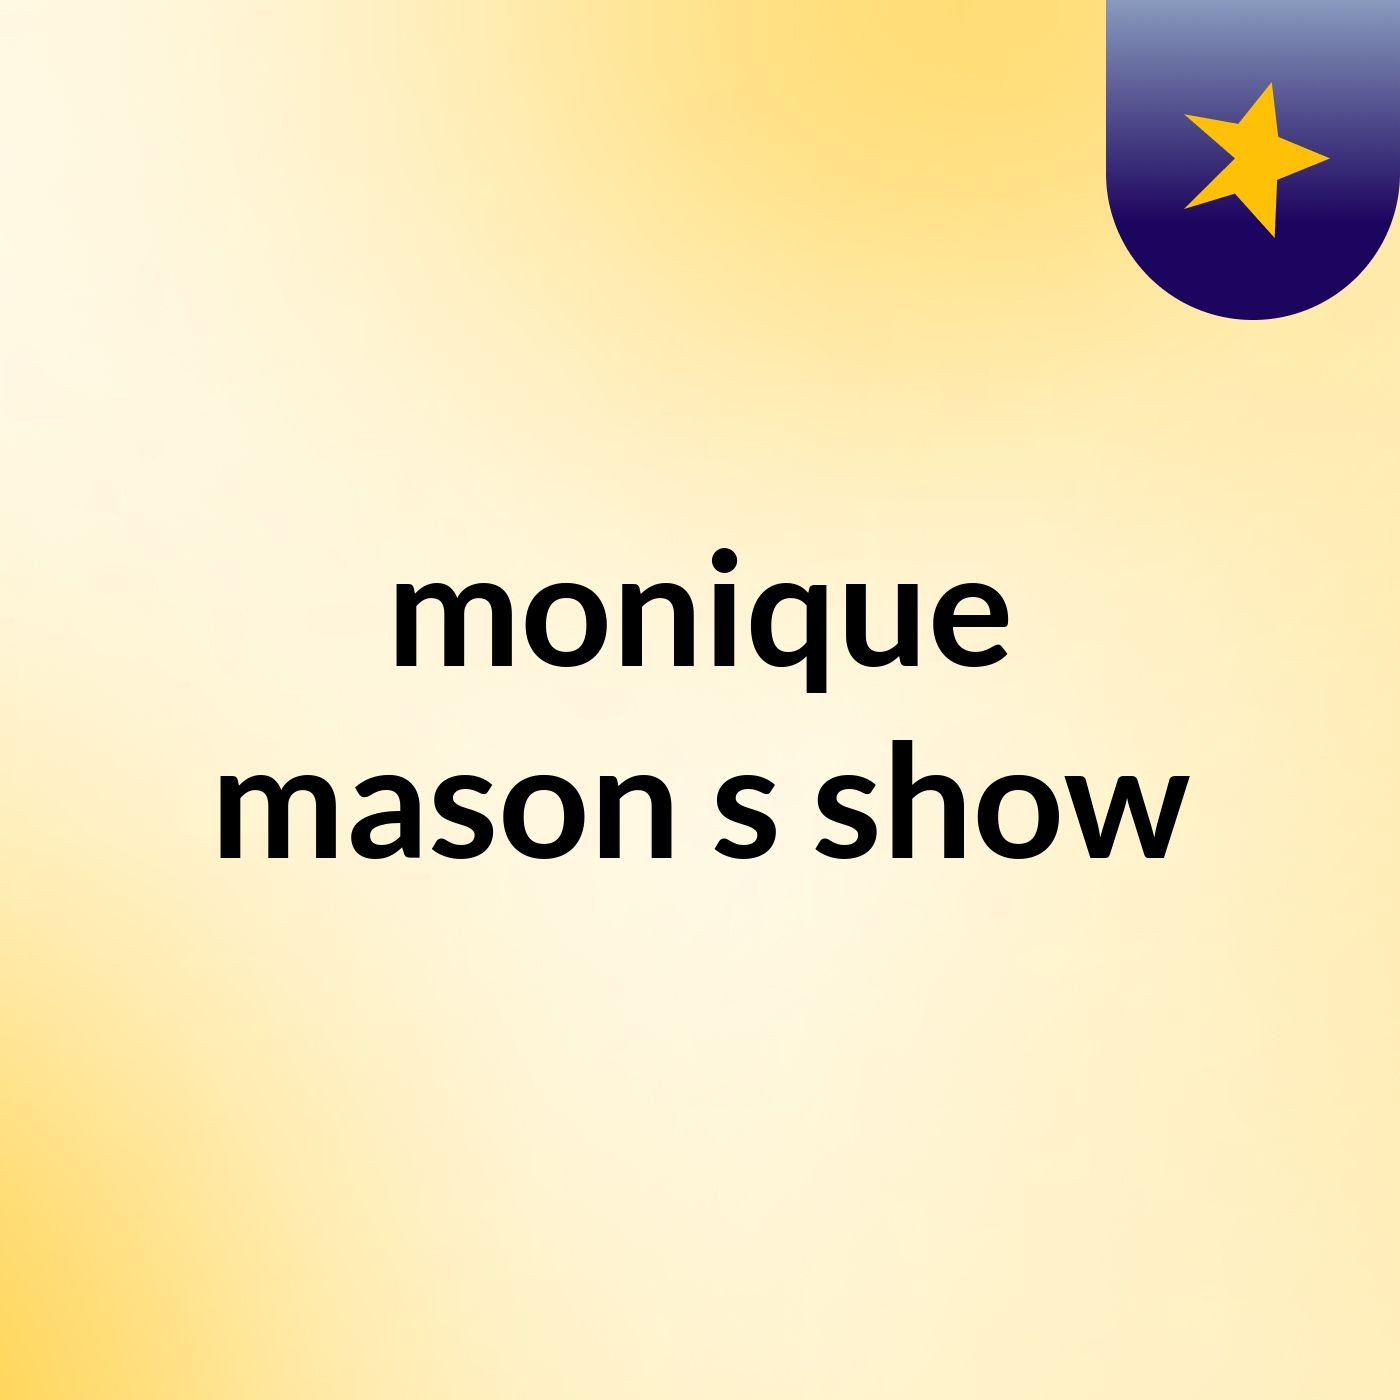 Episode 13 - monique mason's show